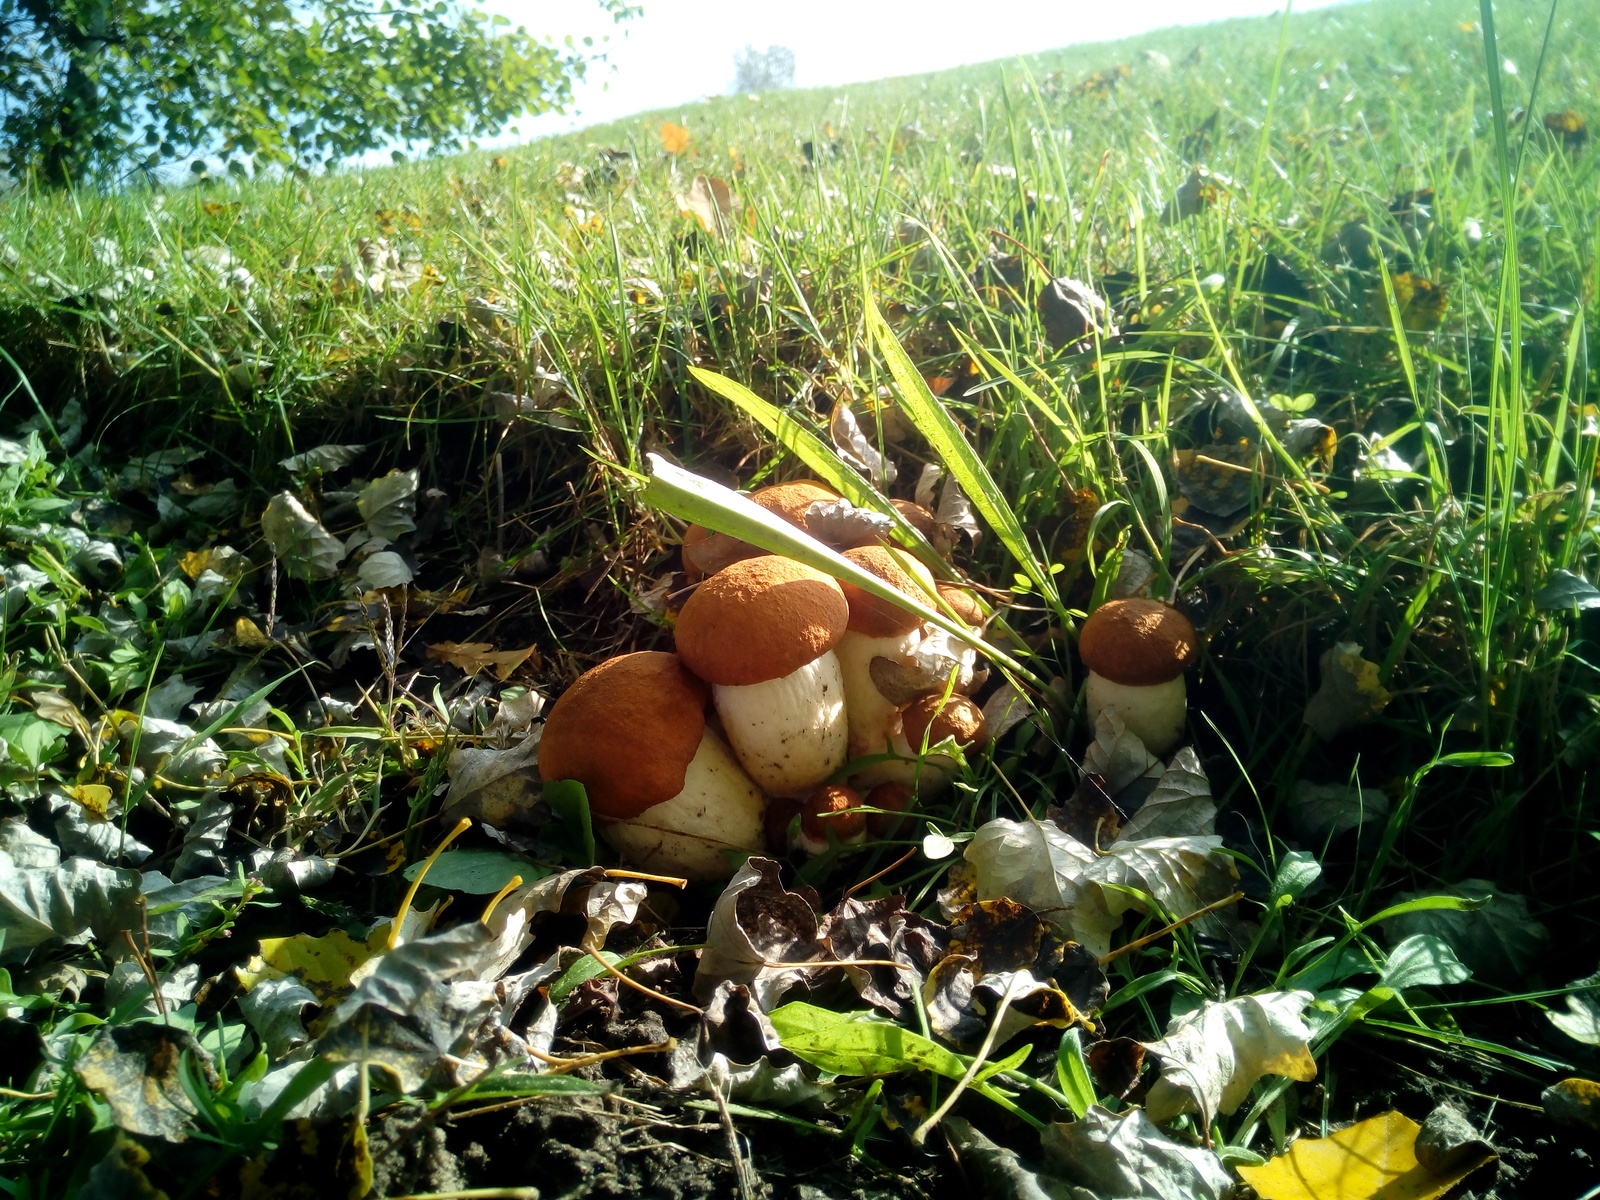 Today's mushrooms - Grass, White, Mushrooms, Polyana, My